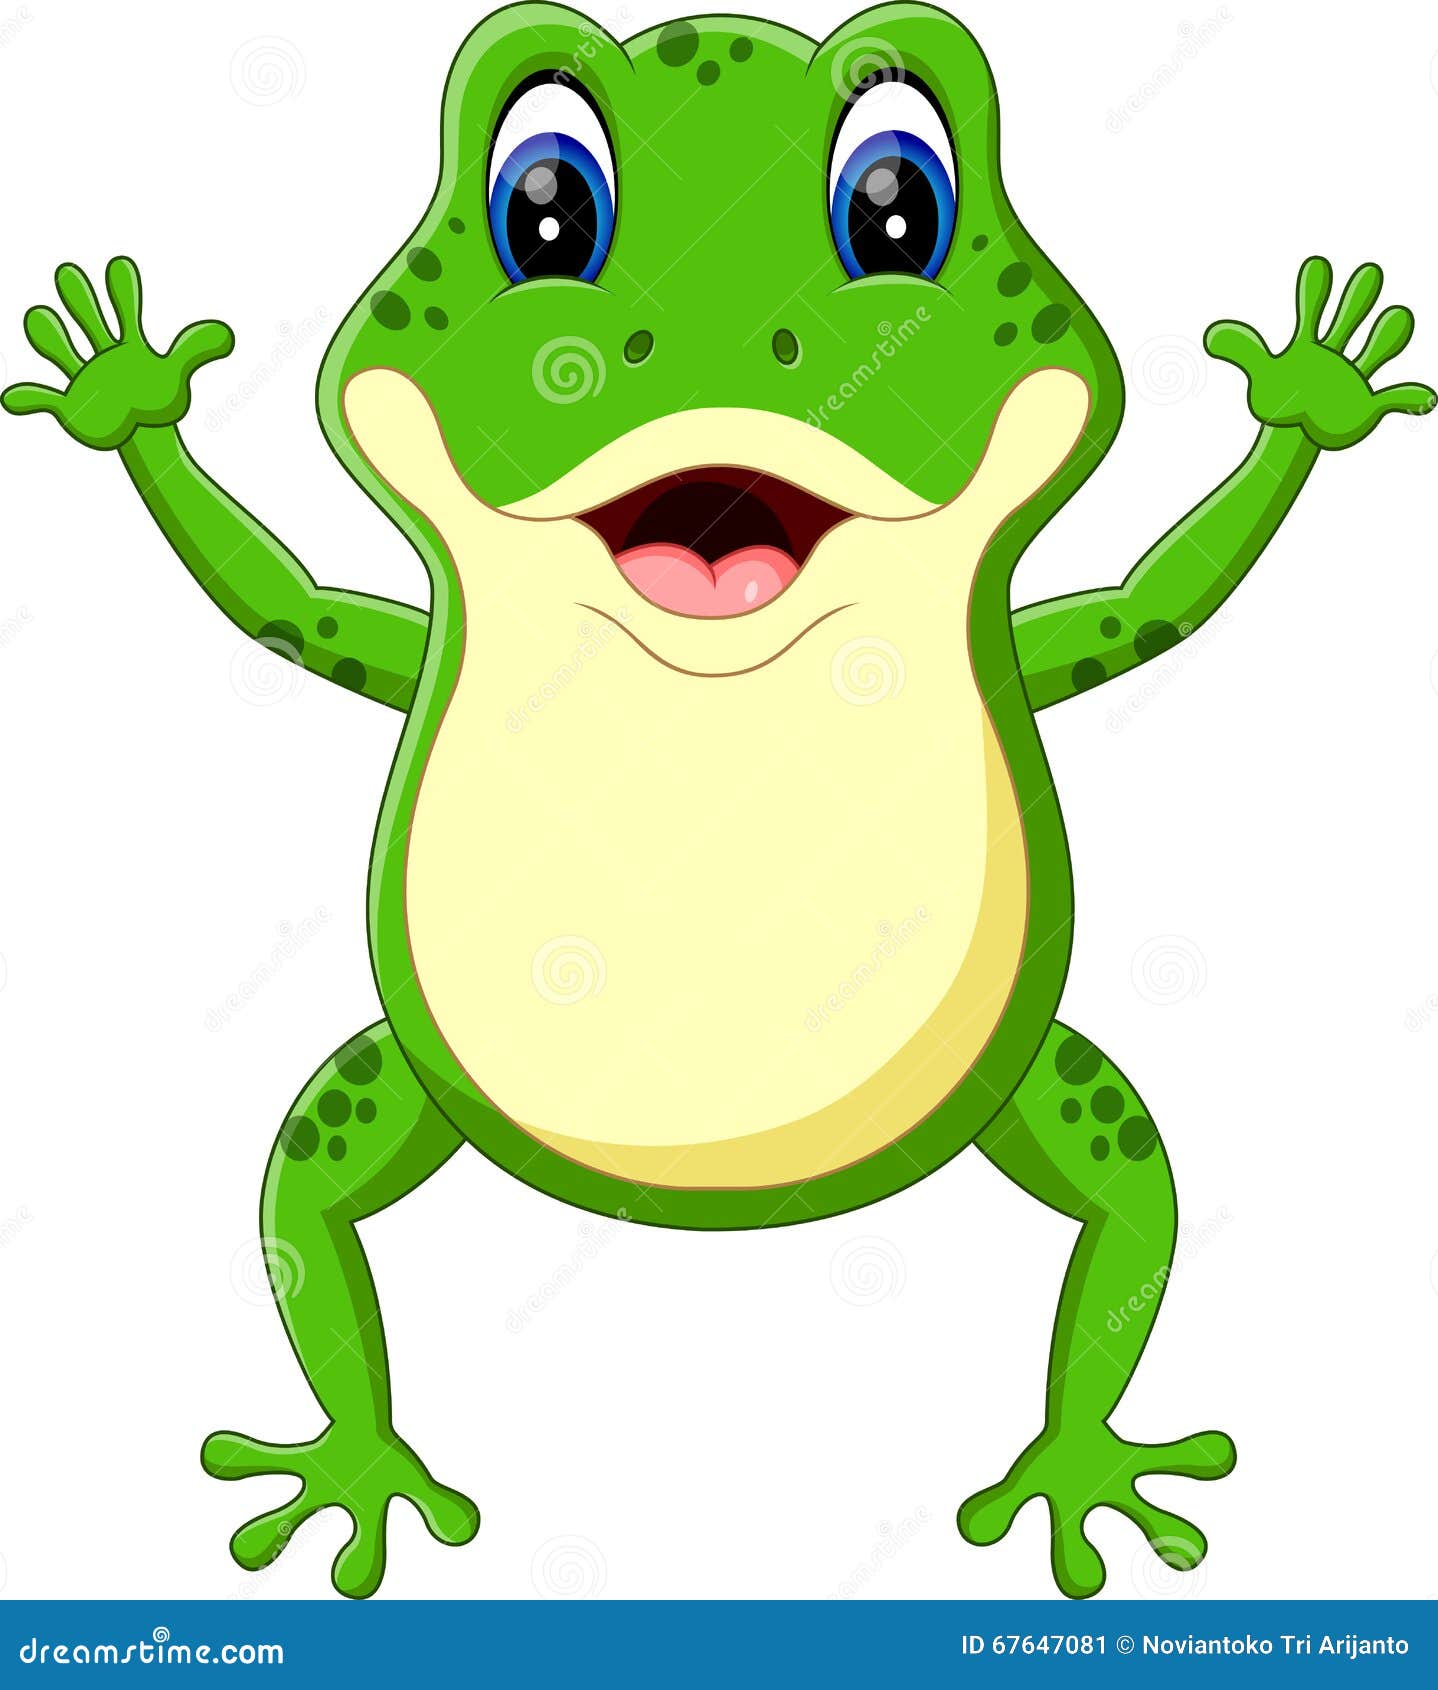 Cute frog cartoon stock vector. Illustration of bullfrog - 67647081